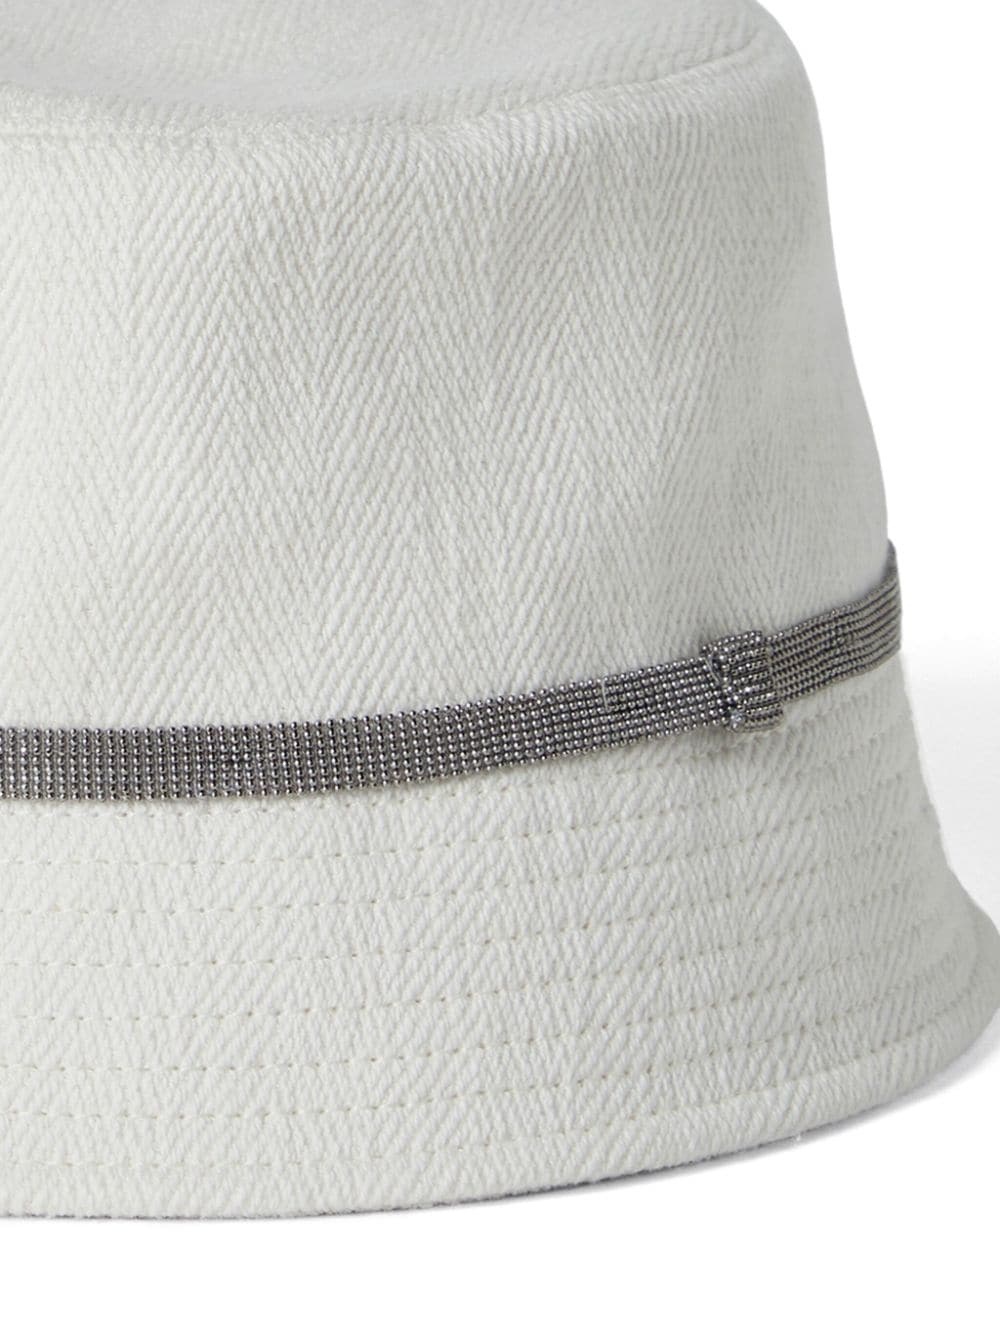 bead-embellished cotton blend bucket hat - 3